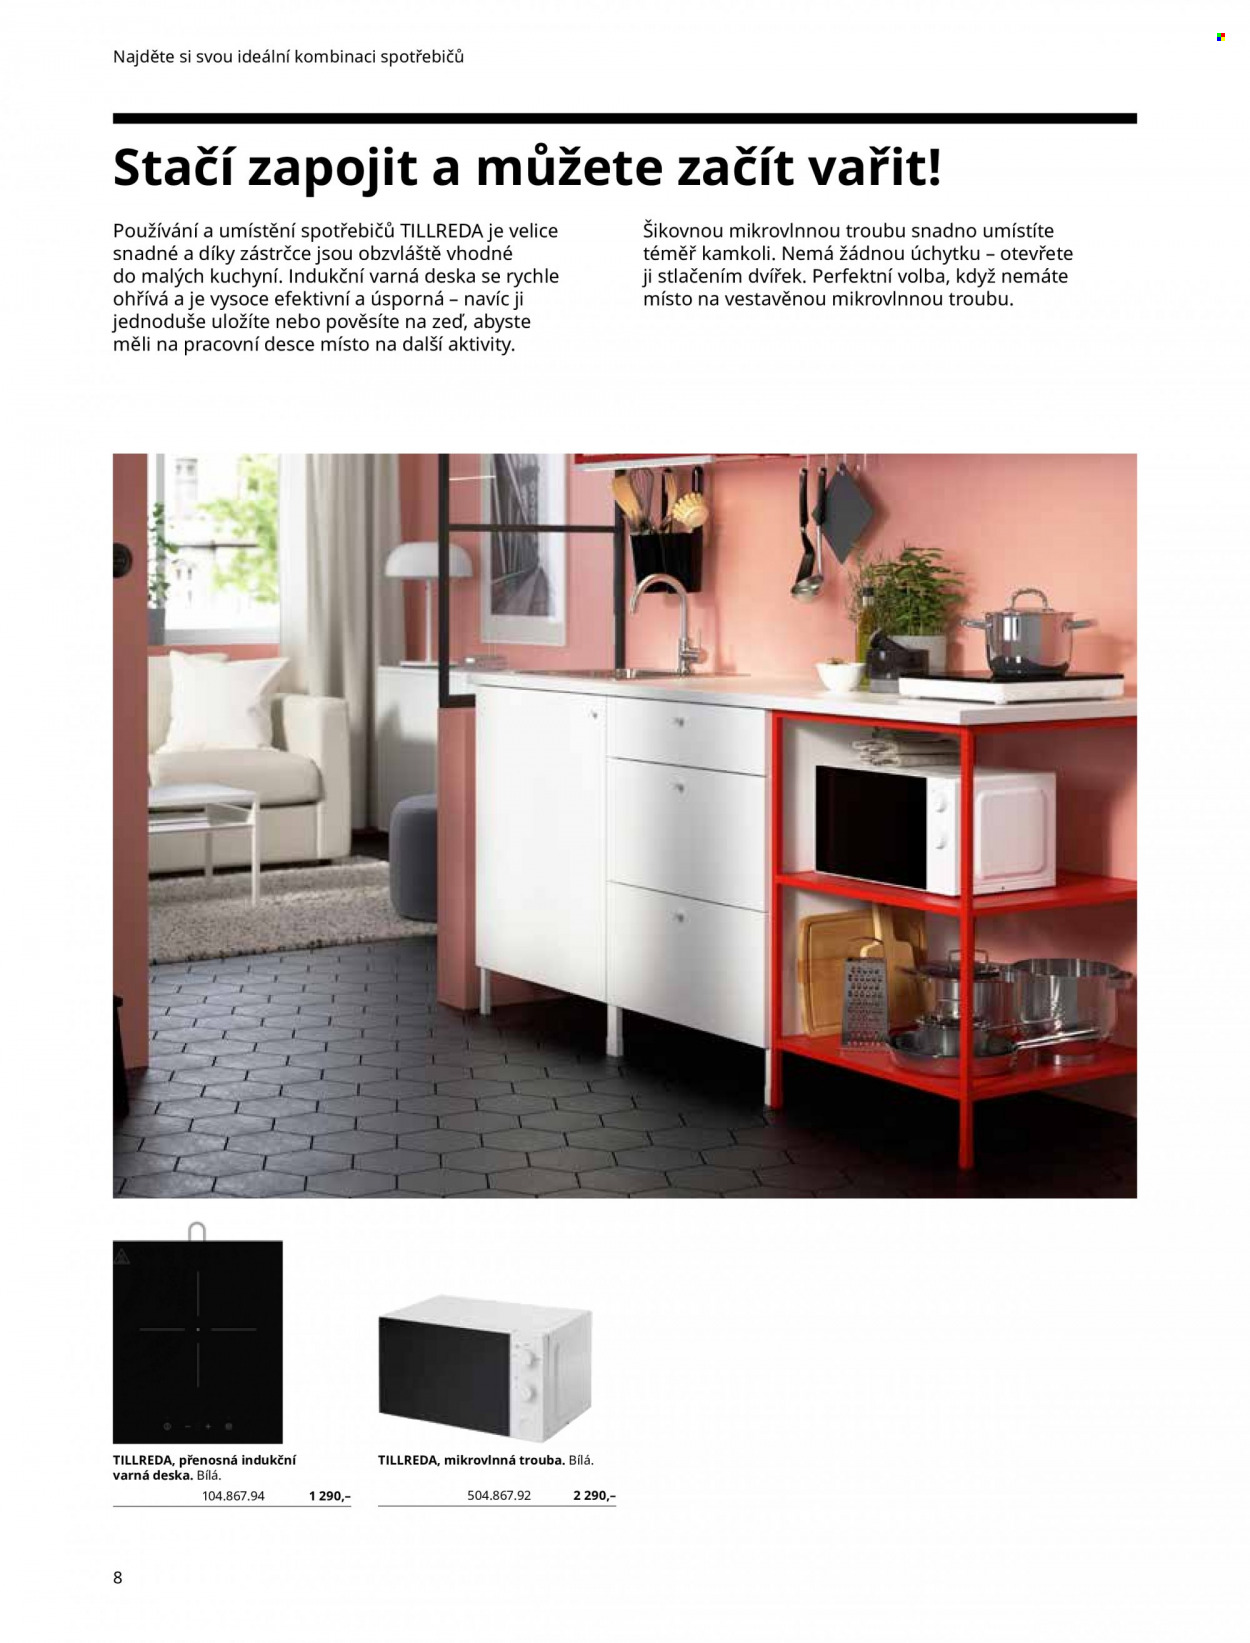 Leták IKEA - Produkty v akci - mikrovlnná trouba, indukční varná deska, varná deska. Strana 8.